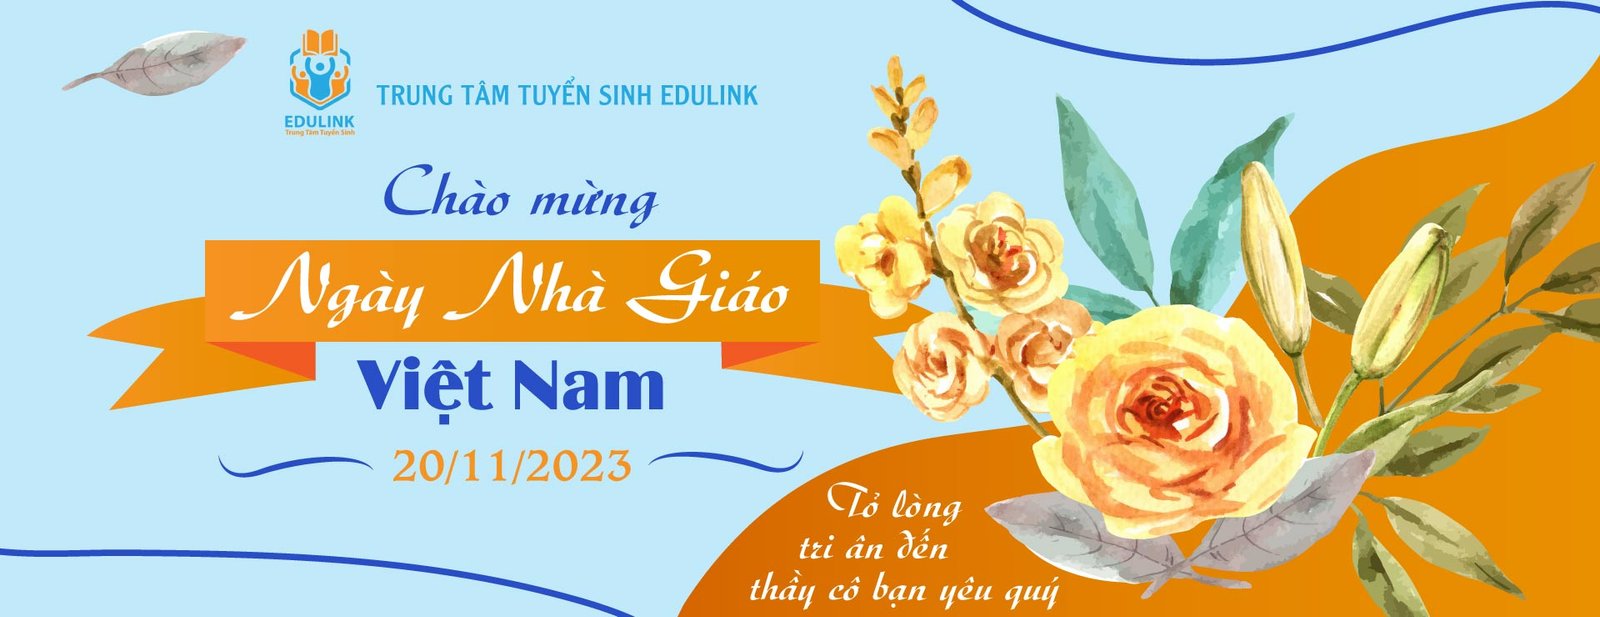 Trung tâm Tuyển sinh EduLink chúc mừng ngày Nhà giáo Việt Nam 20/11